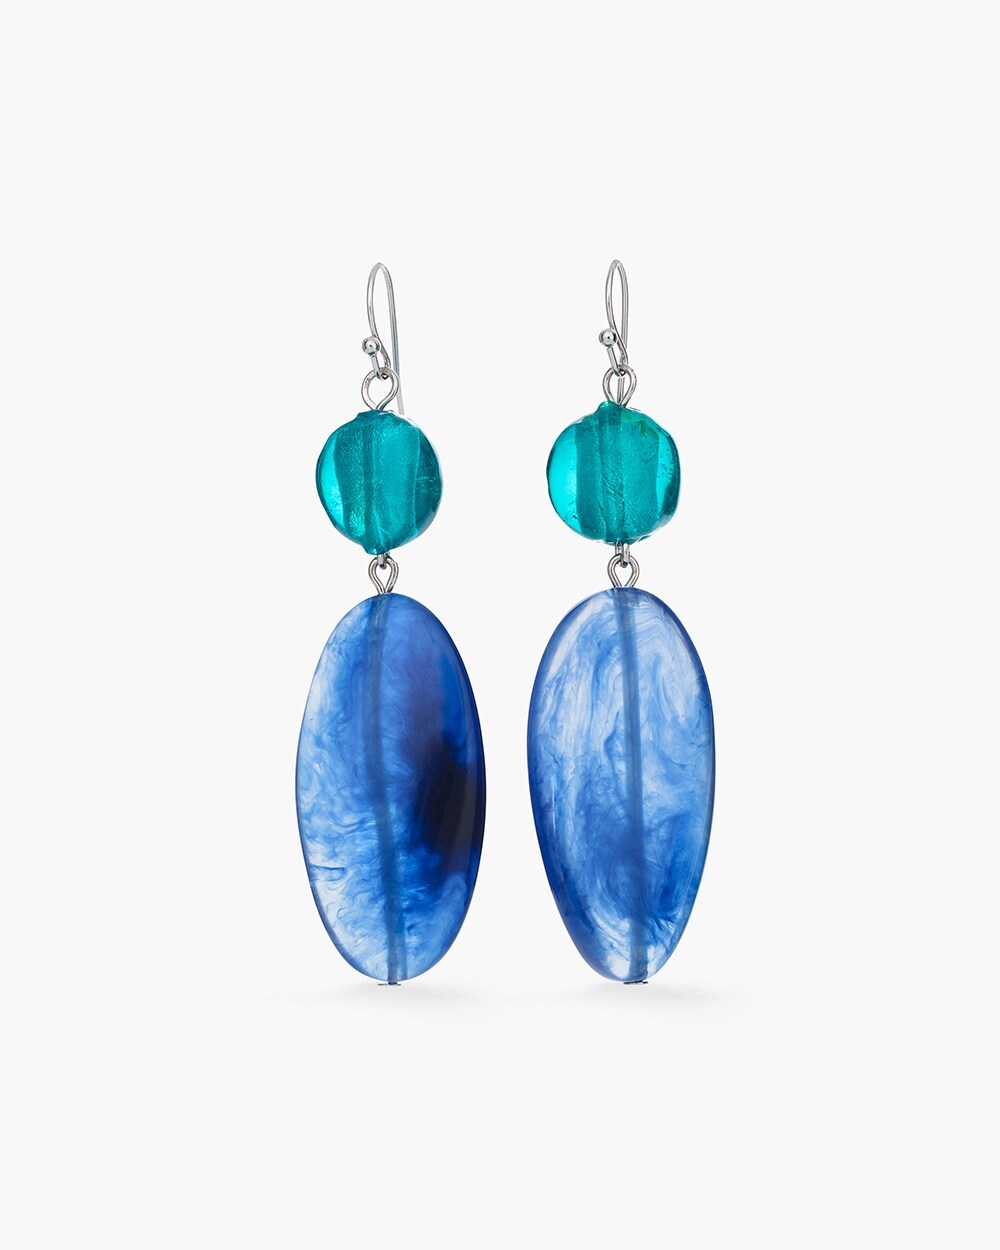 Blue Oval Drop Earrings